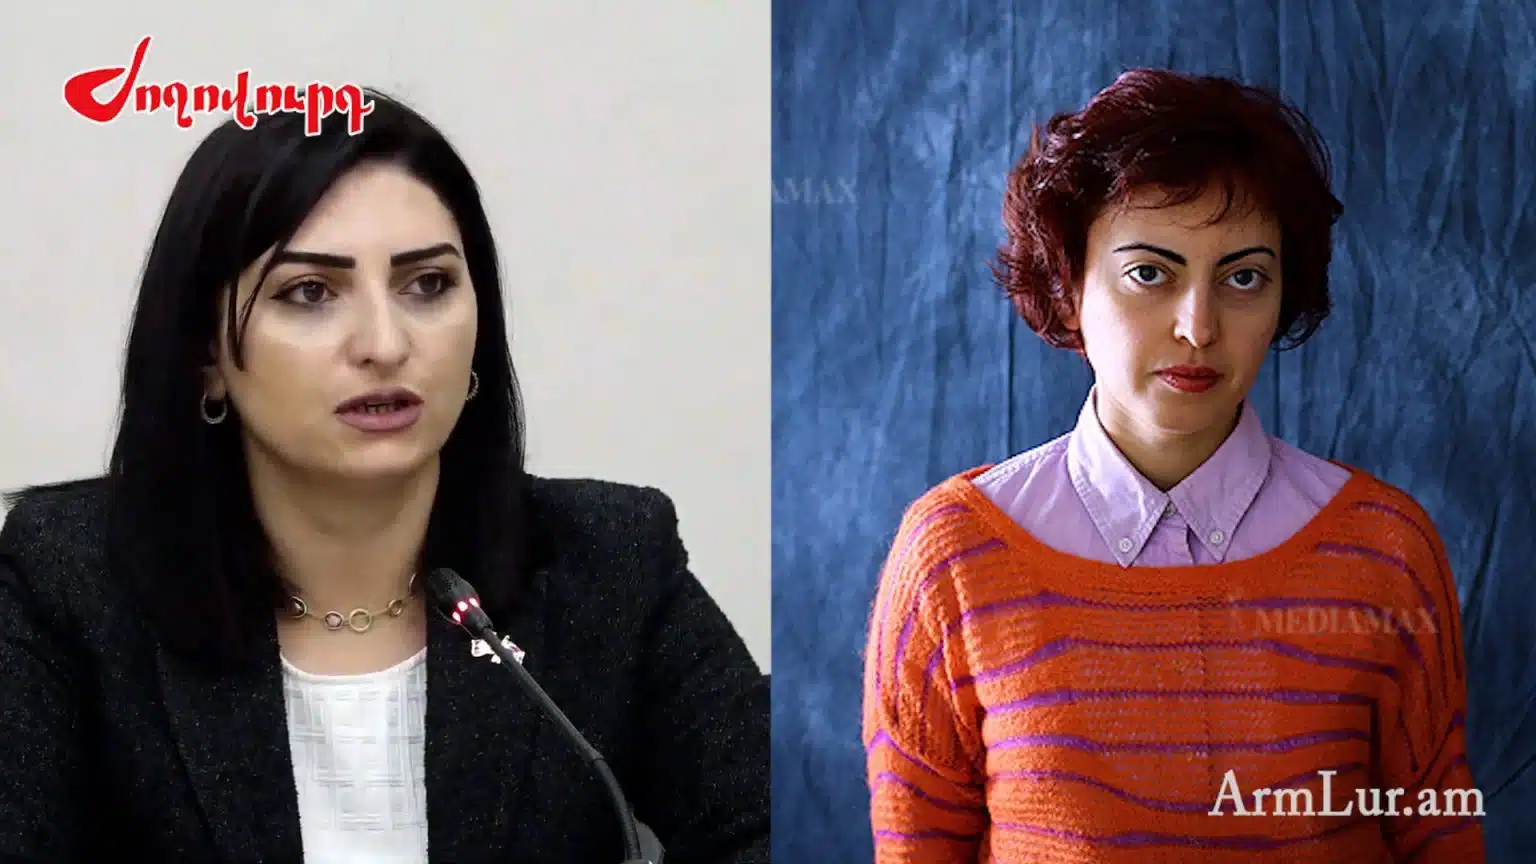 Թագուհի Թովմասյանը Լենա Նազարյանին մեղադրեց բեսպրեդելի ու դատական համակարգի նկատմամբ անարգանքի համար